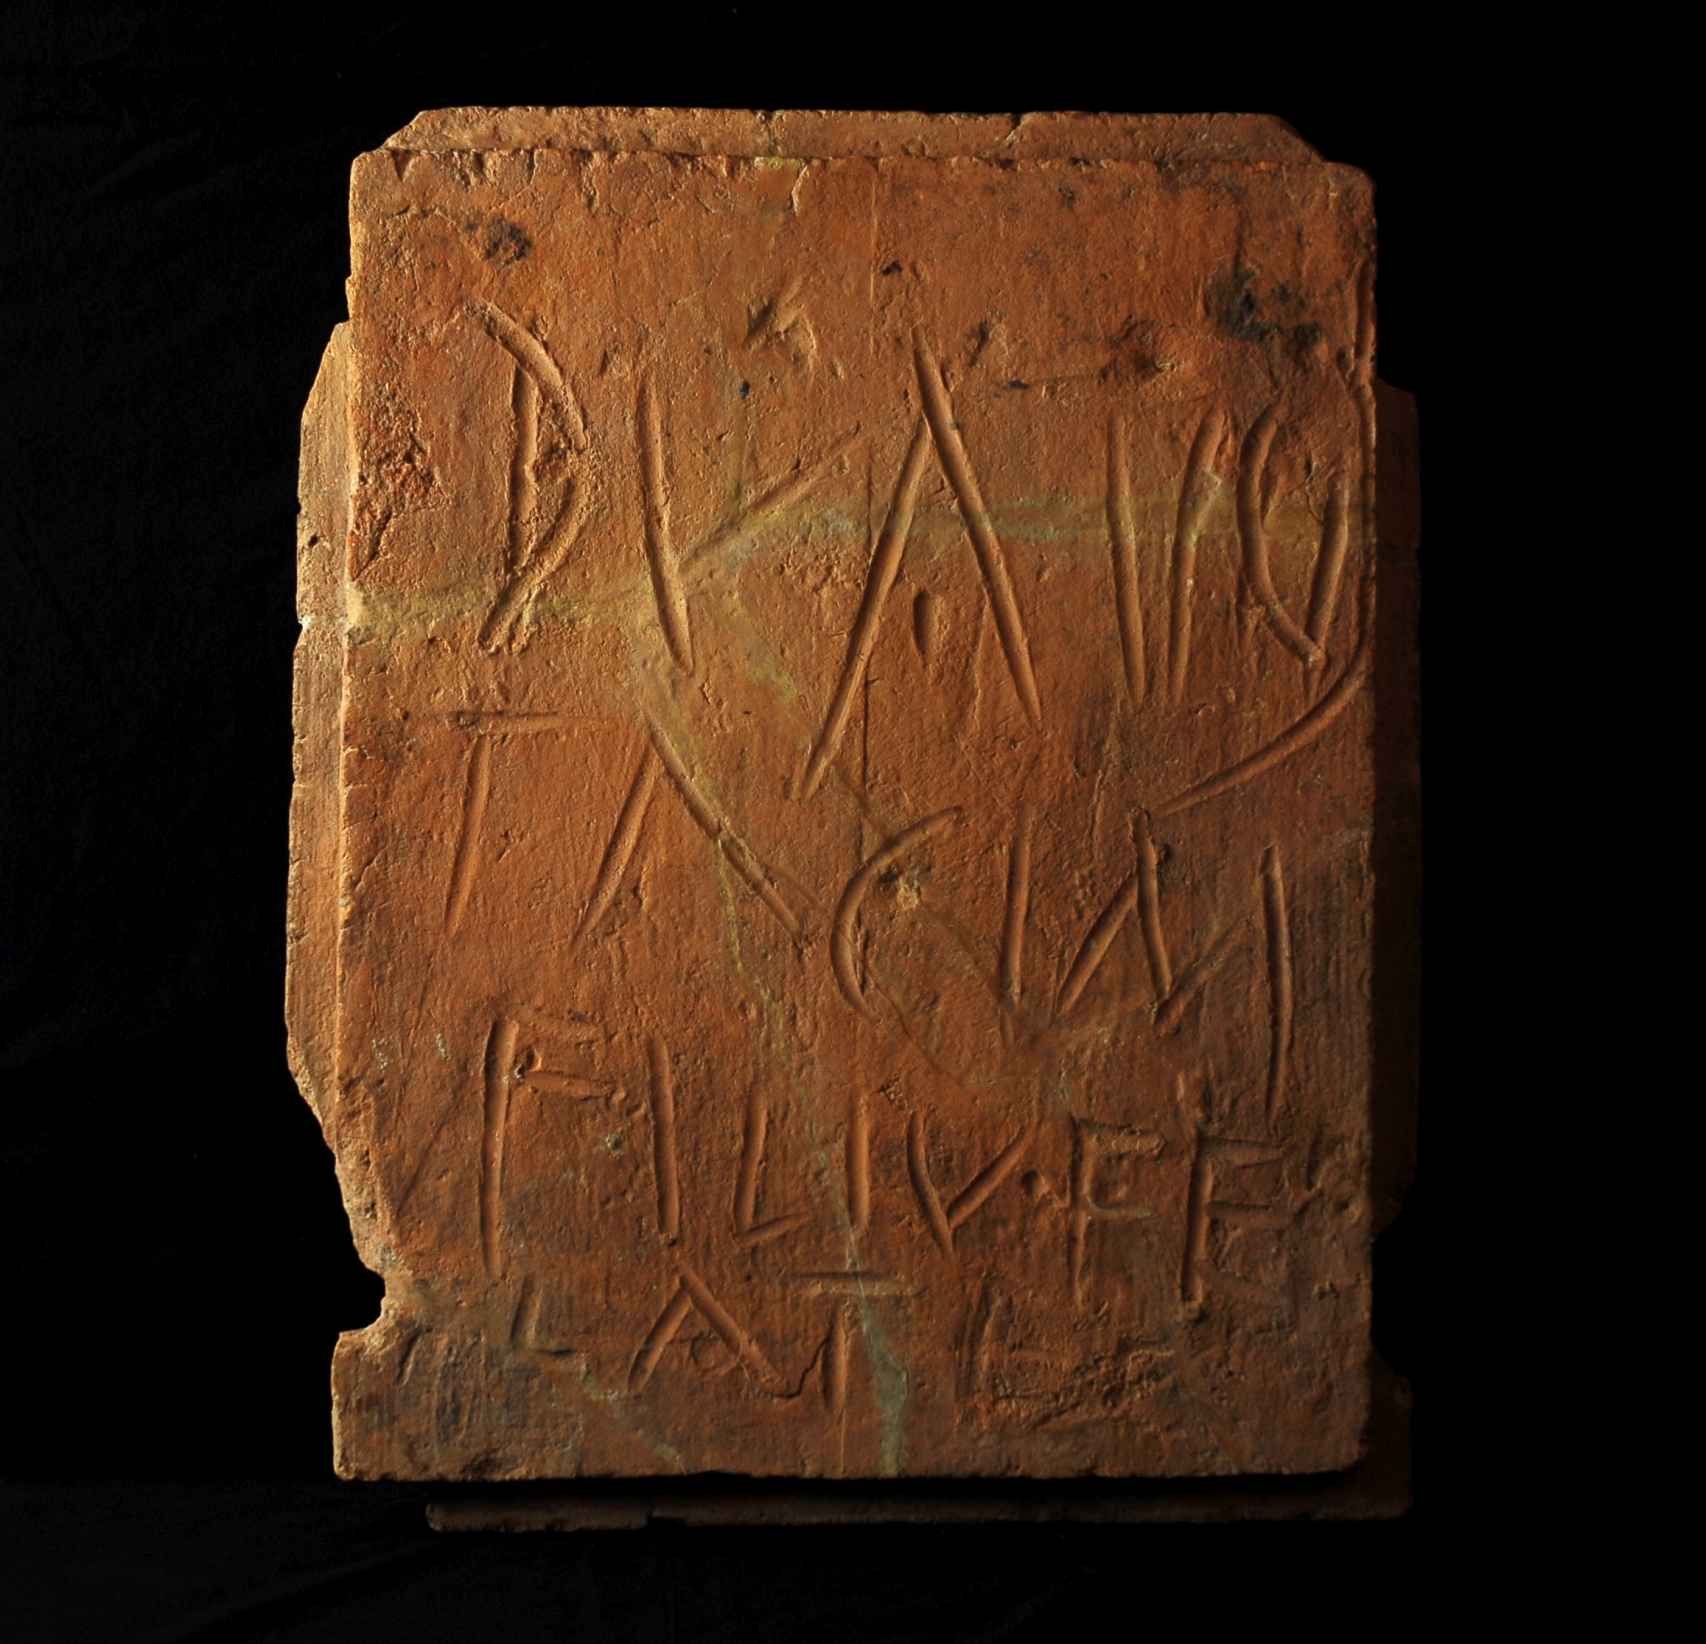 Ladrillo del siglo I d.C y hallado en la ciudad de Conimbriga, en la antigua provincia romana de Lusitania, en la que alguien escribió: Duazio, hijo de Tachino, te lo chupa a ti.